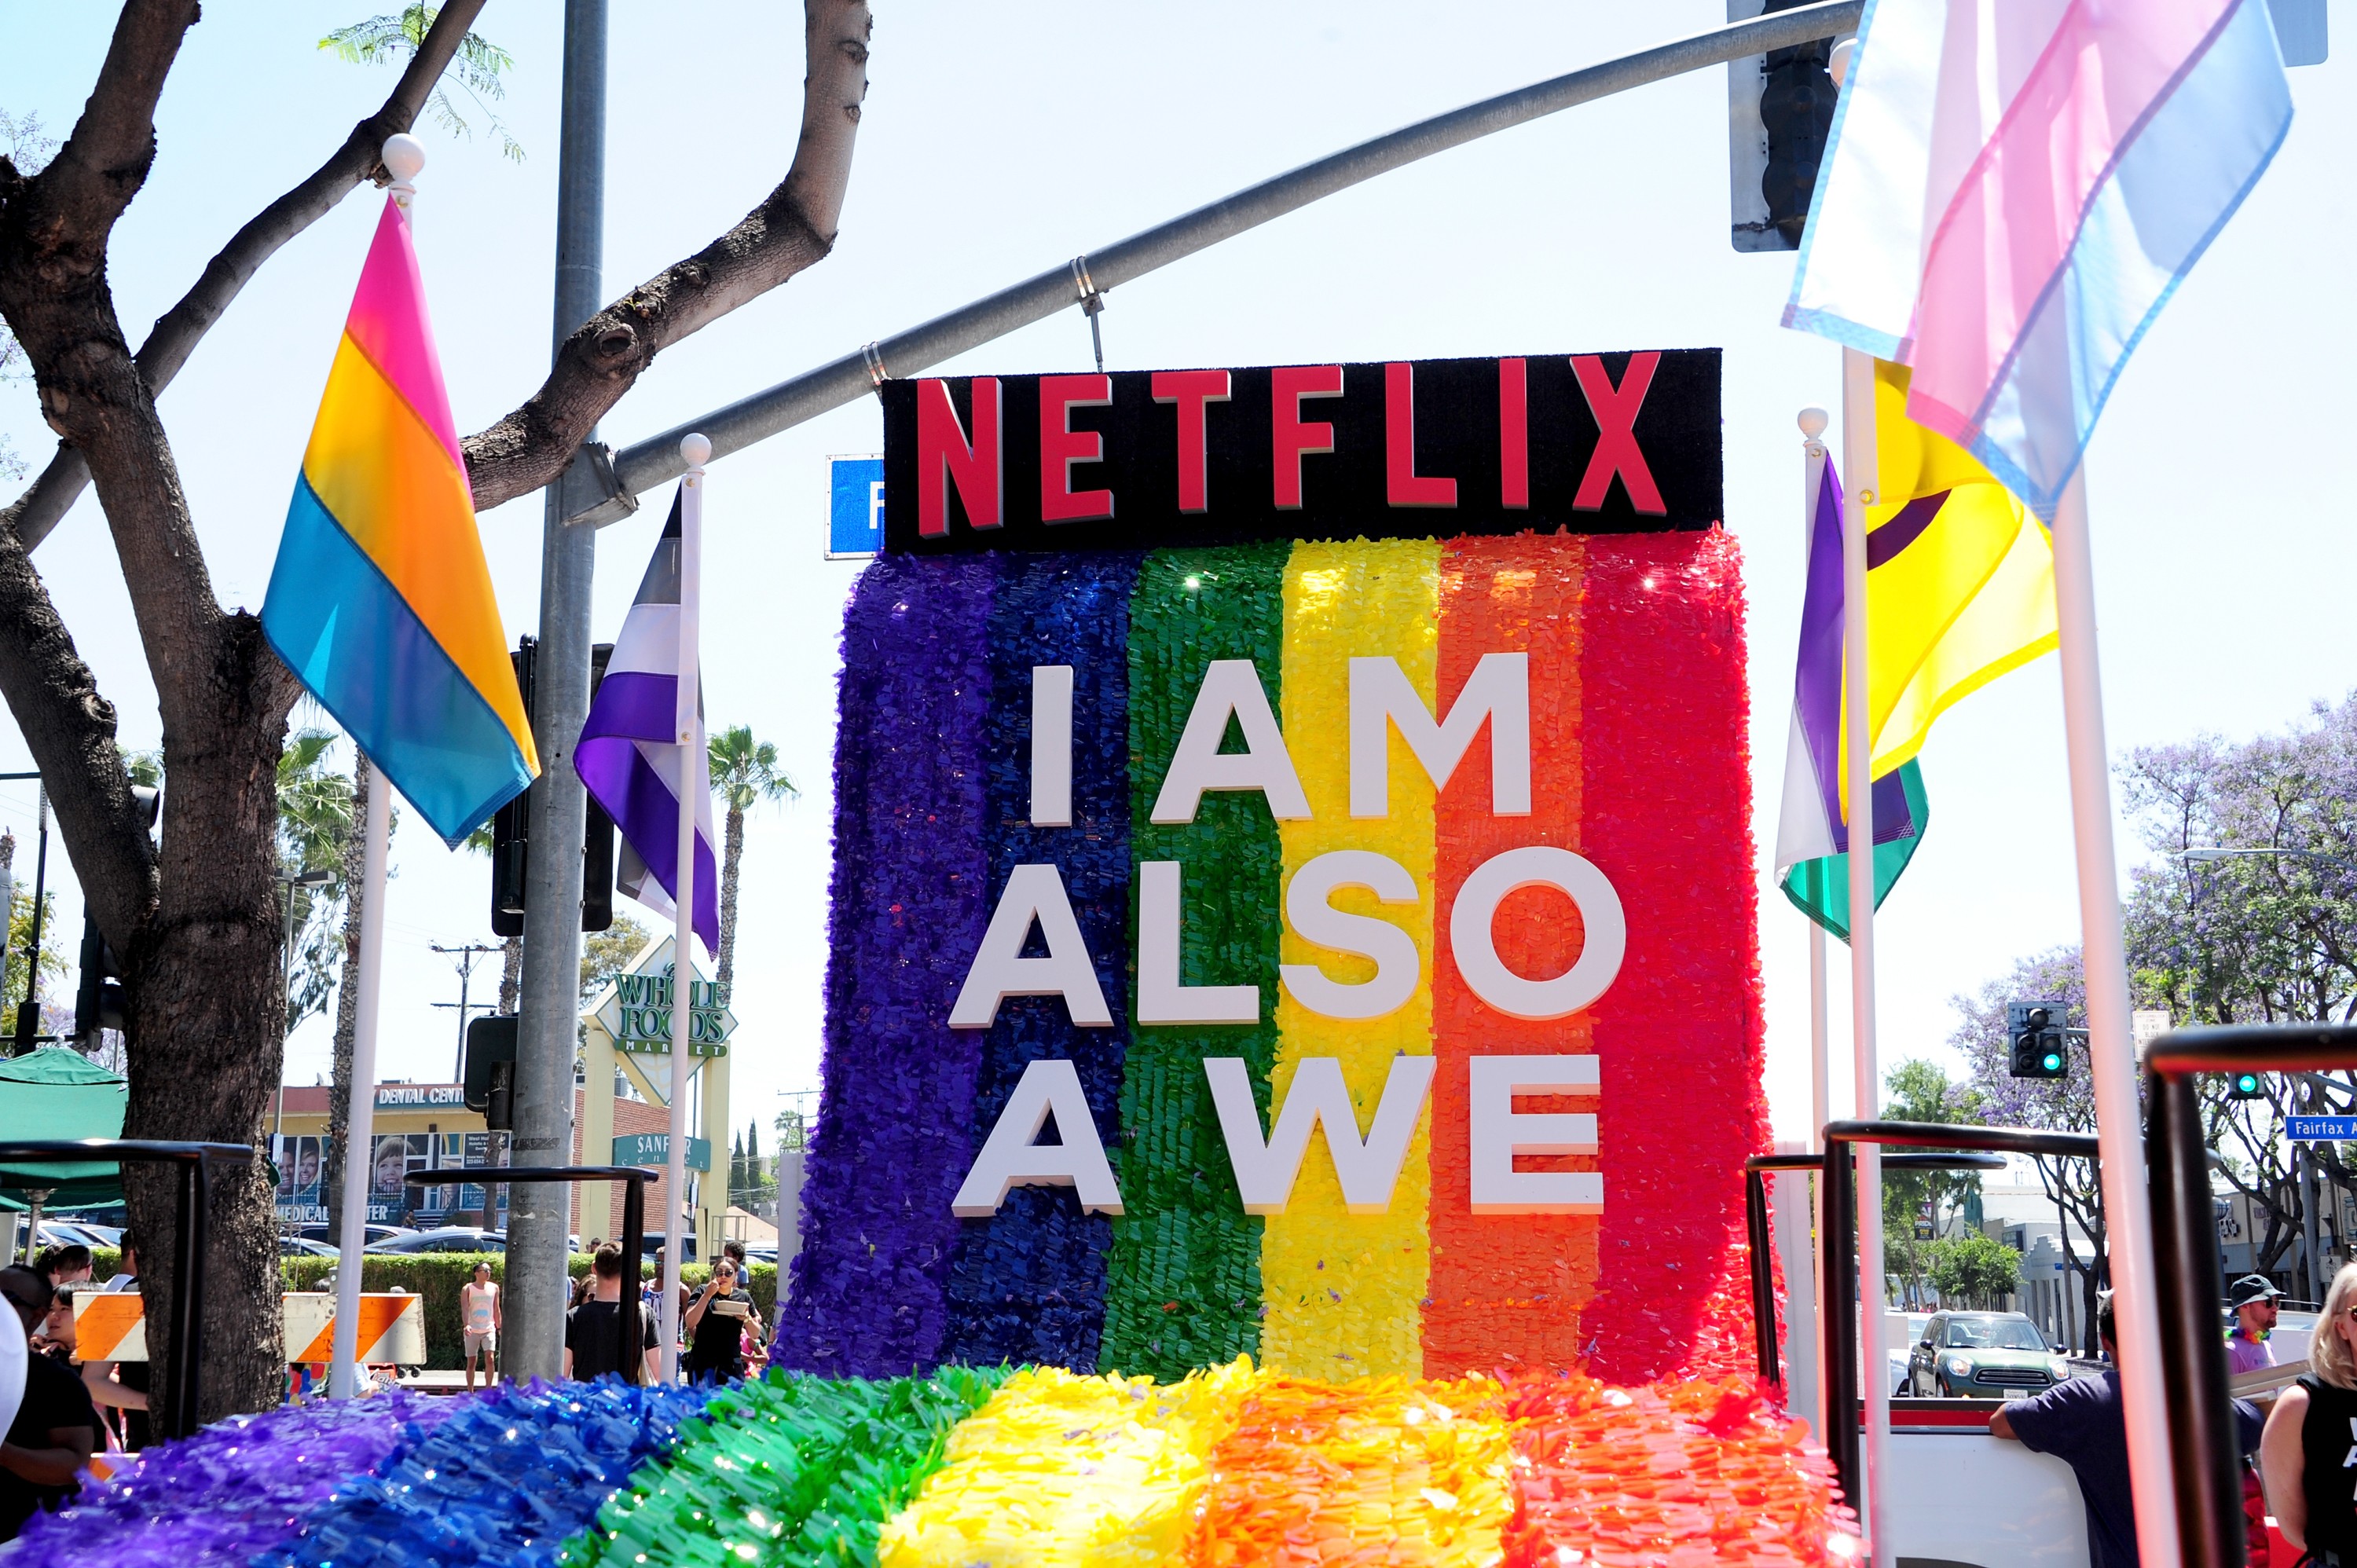 Netflix na parada LGBT de Los Angeles no início de junho de 2018 (Foto: Getty Images)